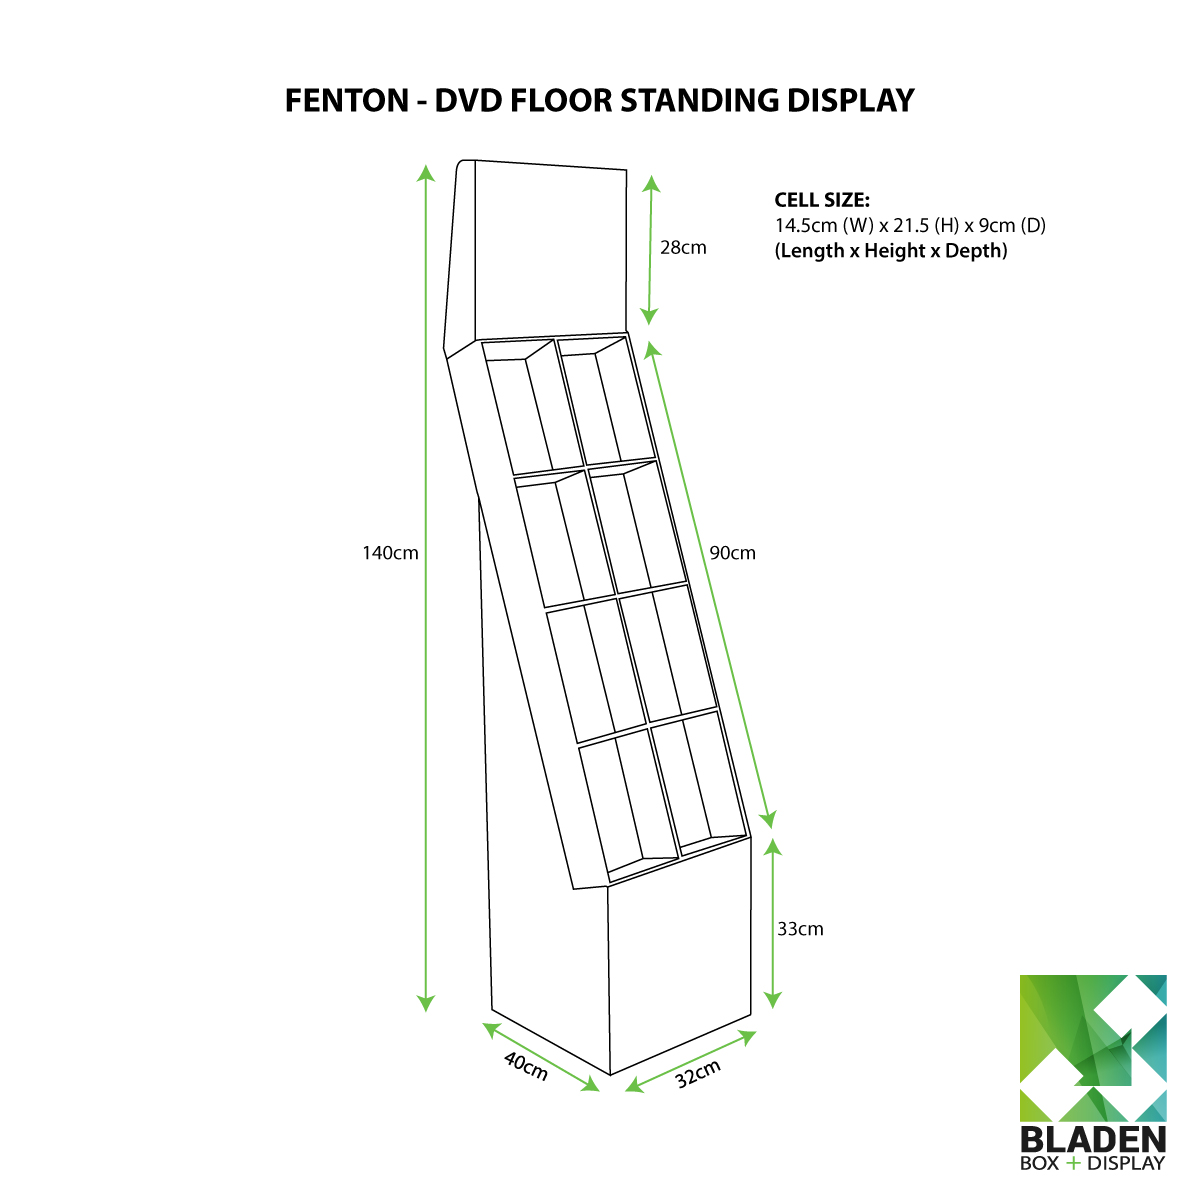 Floor Standing Display - Fenton DVD Line Drawing